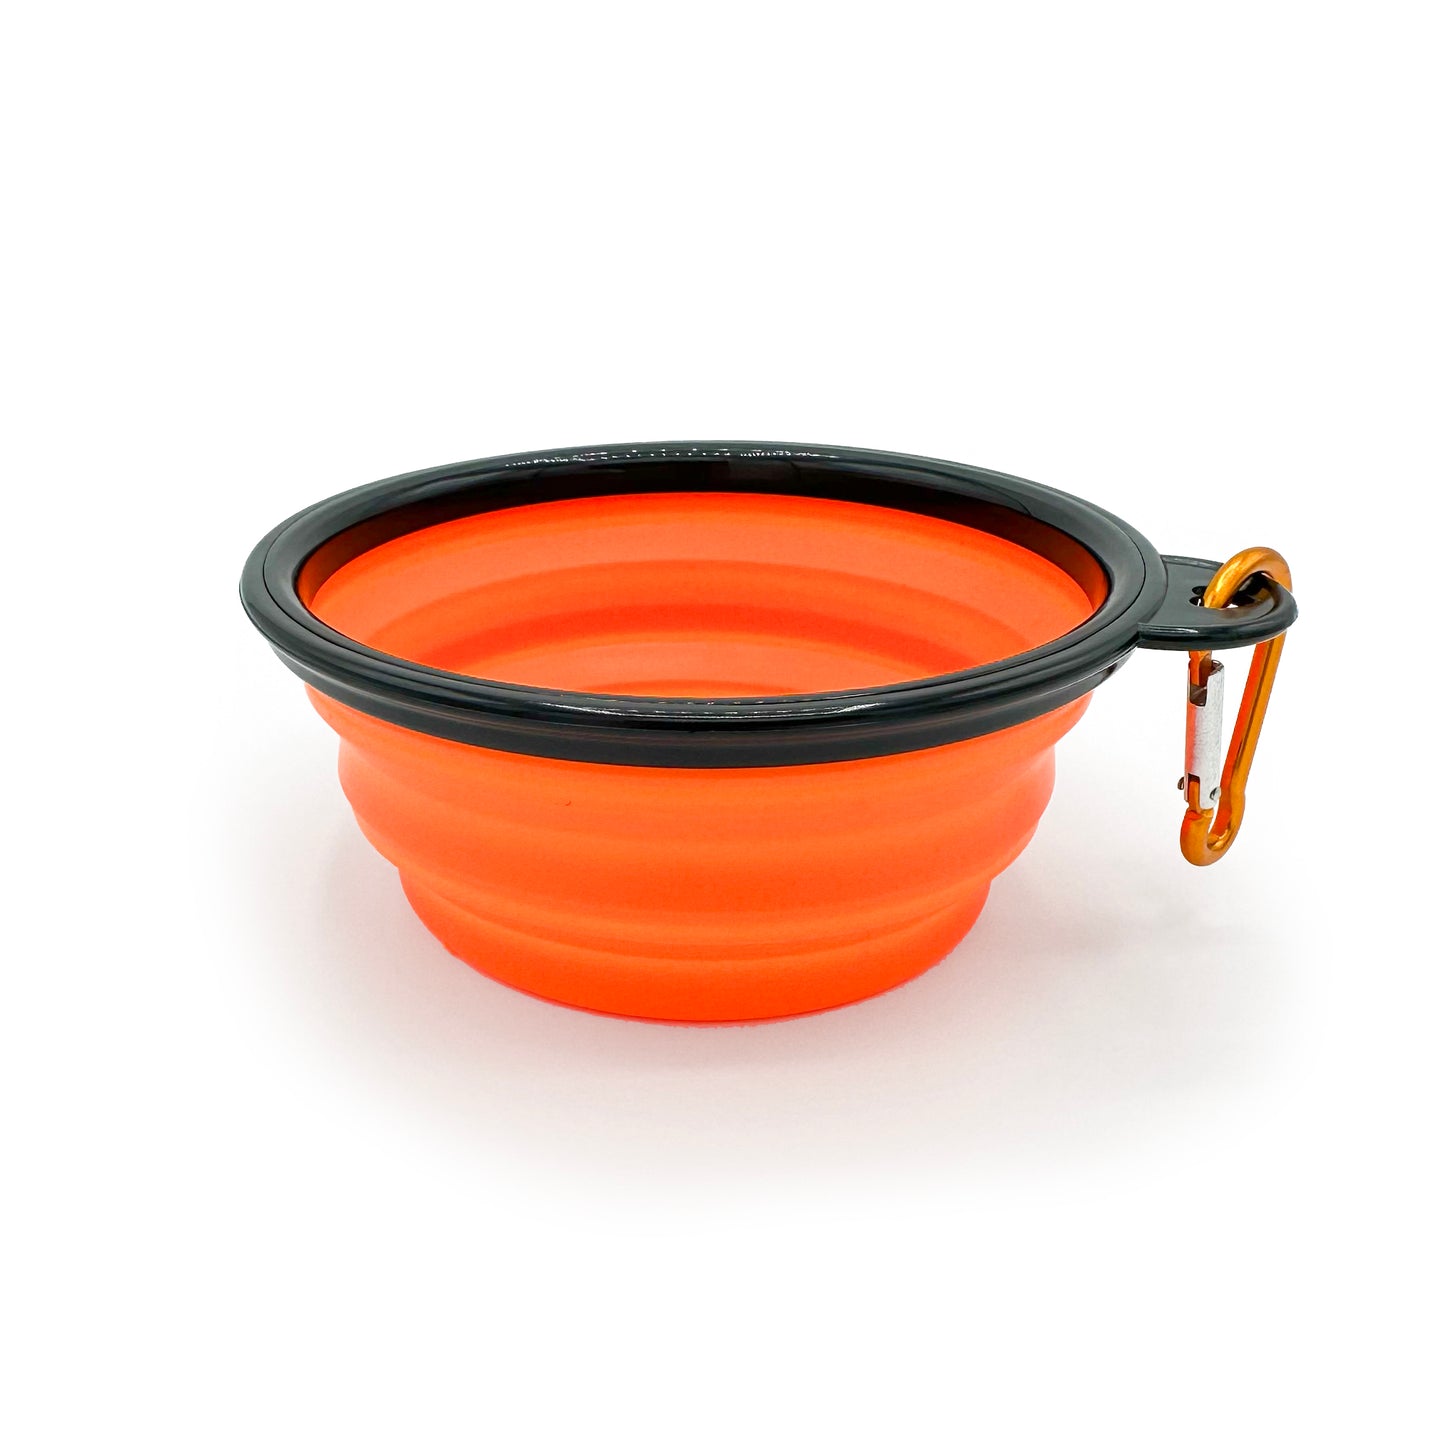 Collapsible Dog Bowl Orange